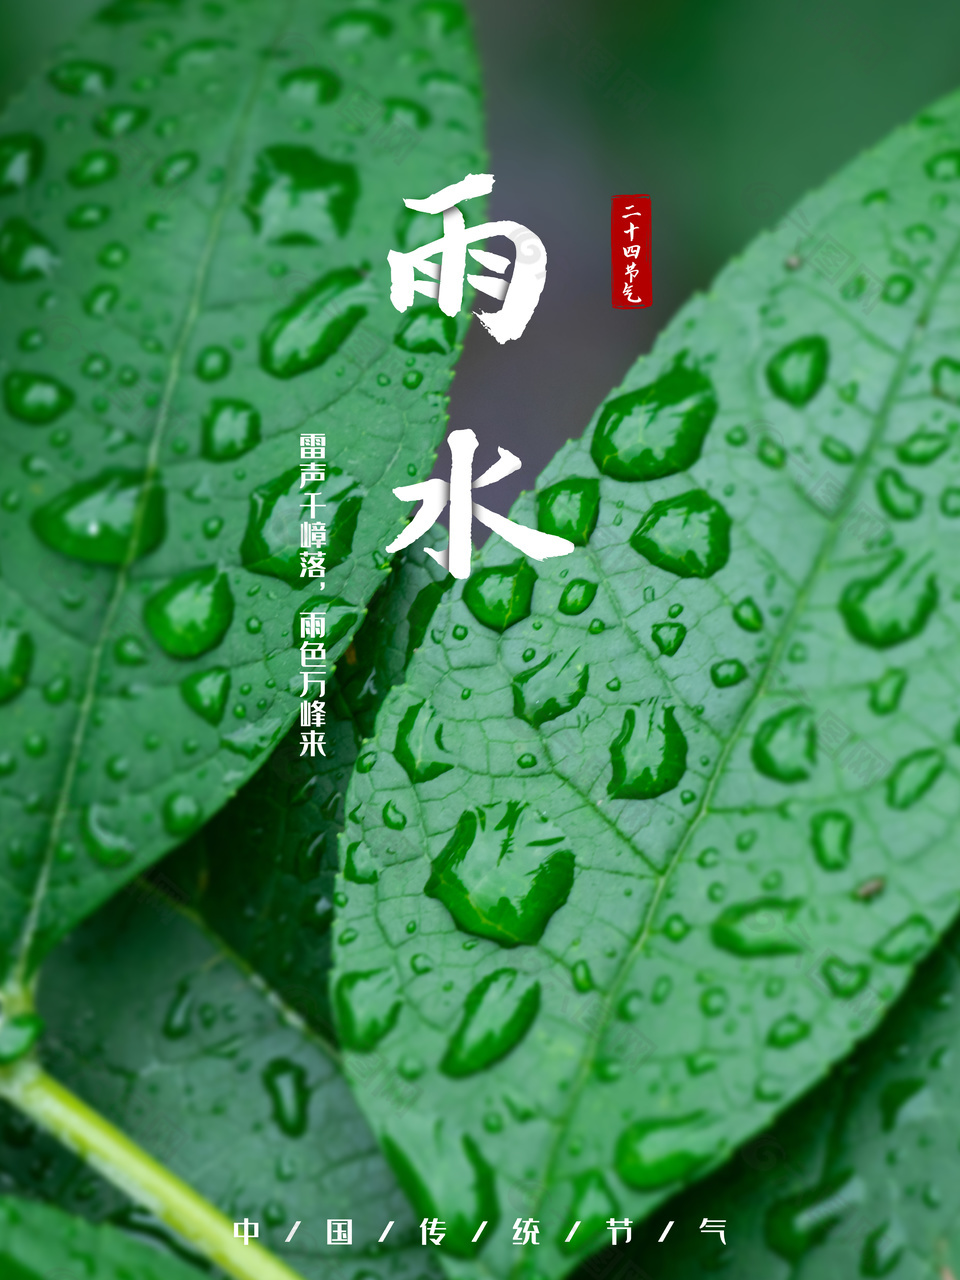 雨色万峰来传统雨水节气海报